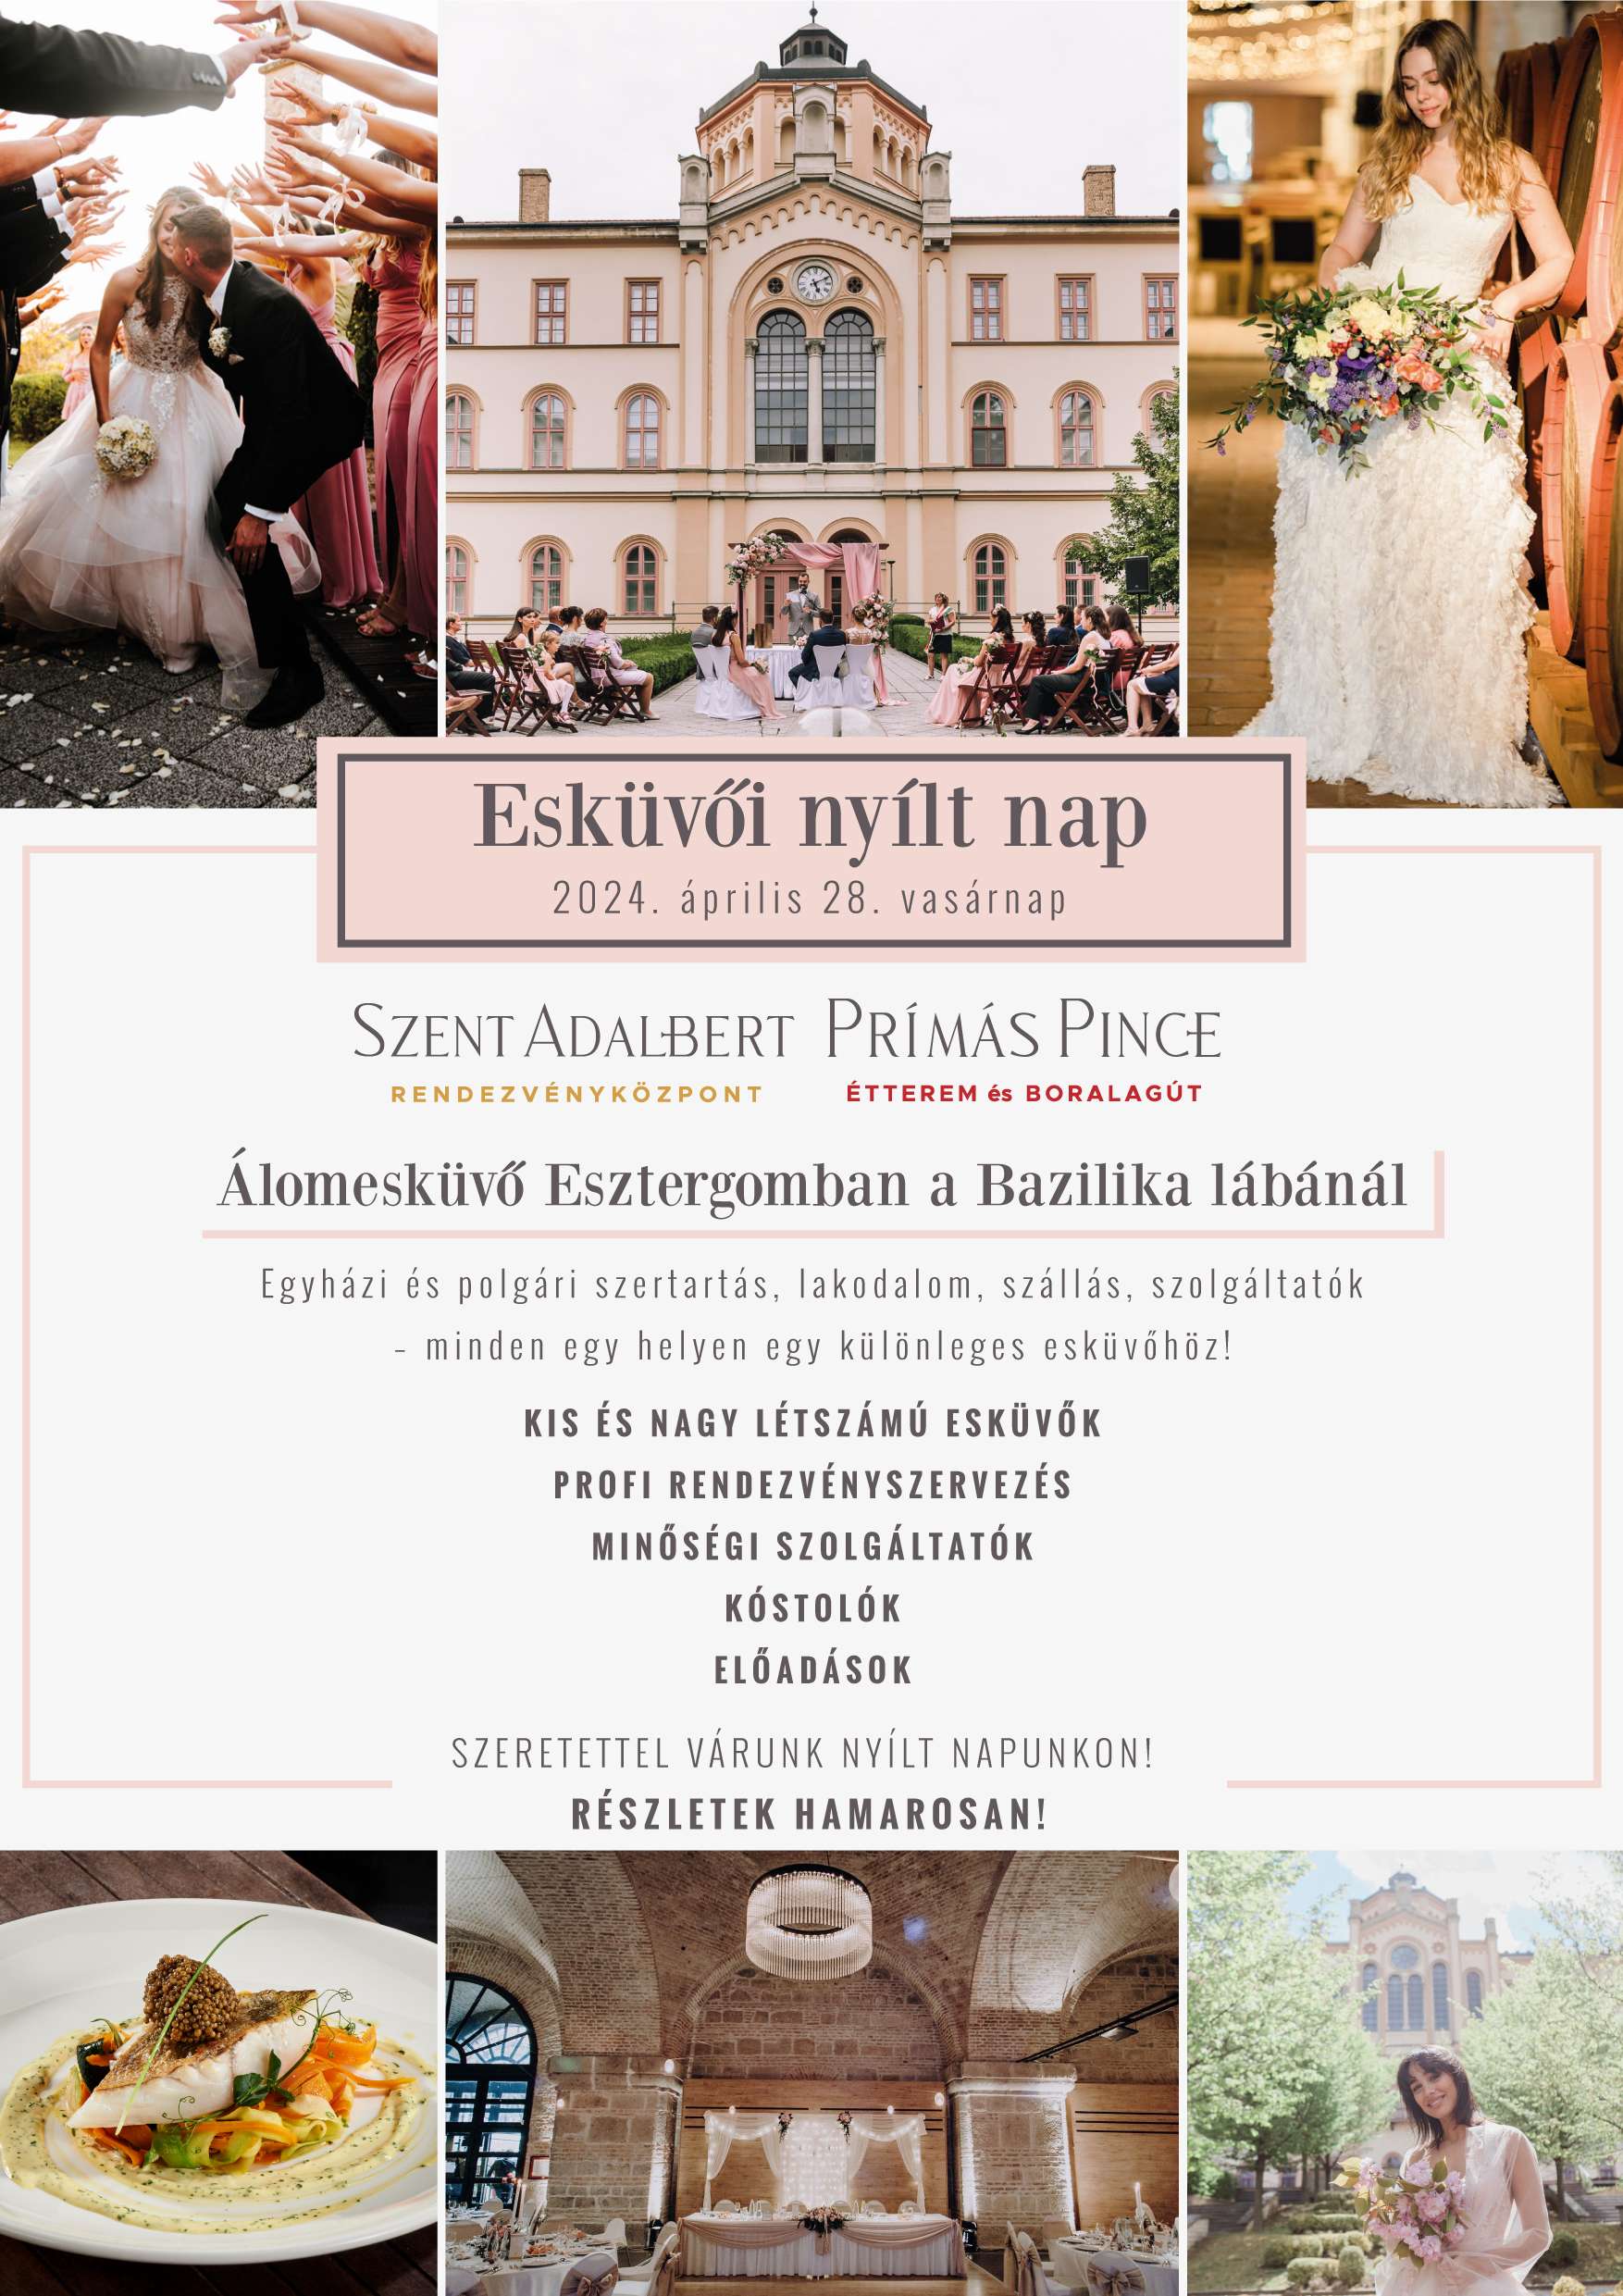 Esküvői nyílt nap Esztergomban